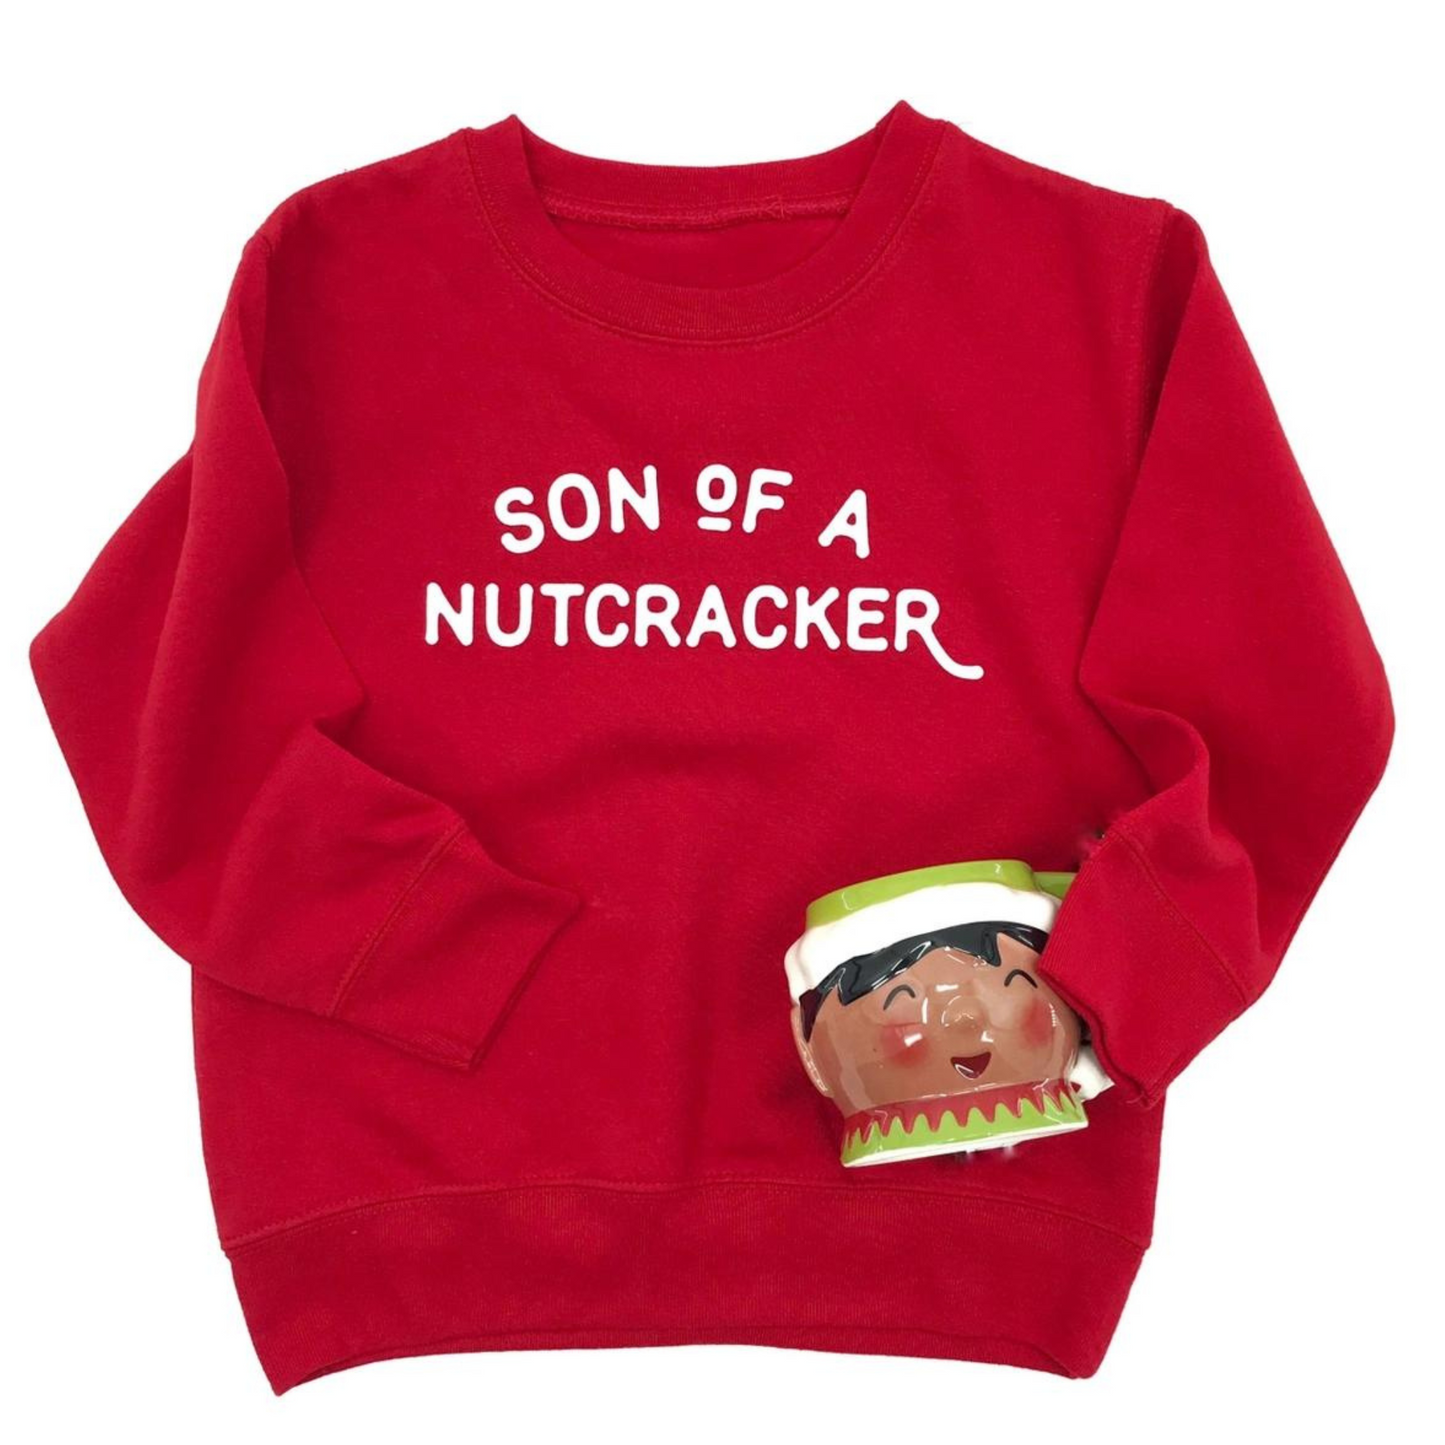 Son Of A Nutcracker Kids Sweatshirt, Red